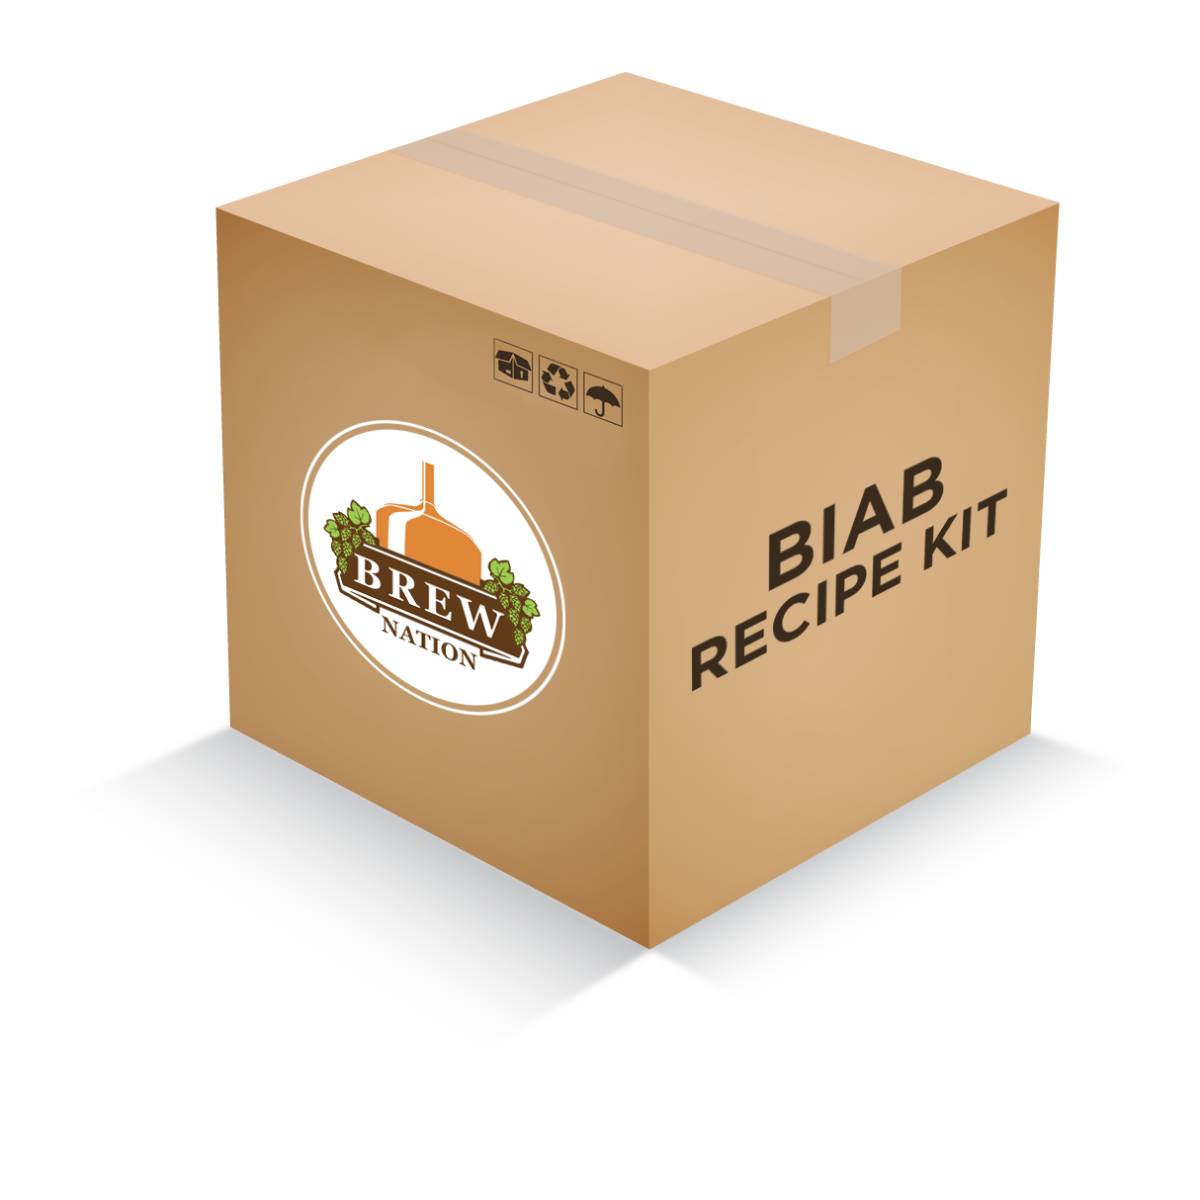 Sierra Nevada Pale Ale (Clone) Recipe Kit (BIAB)